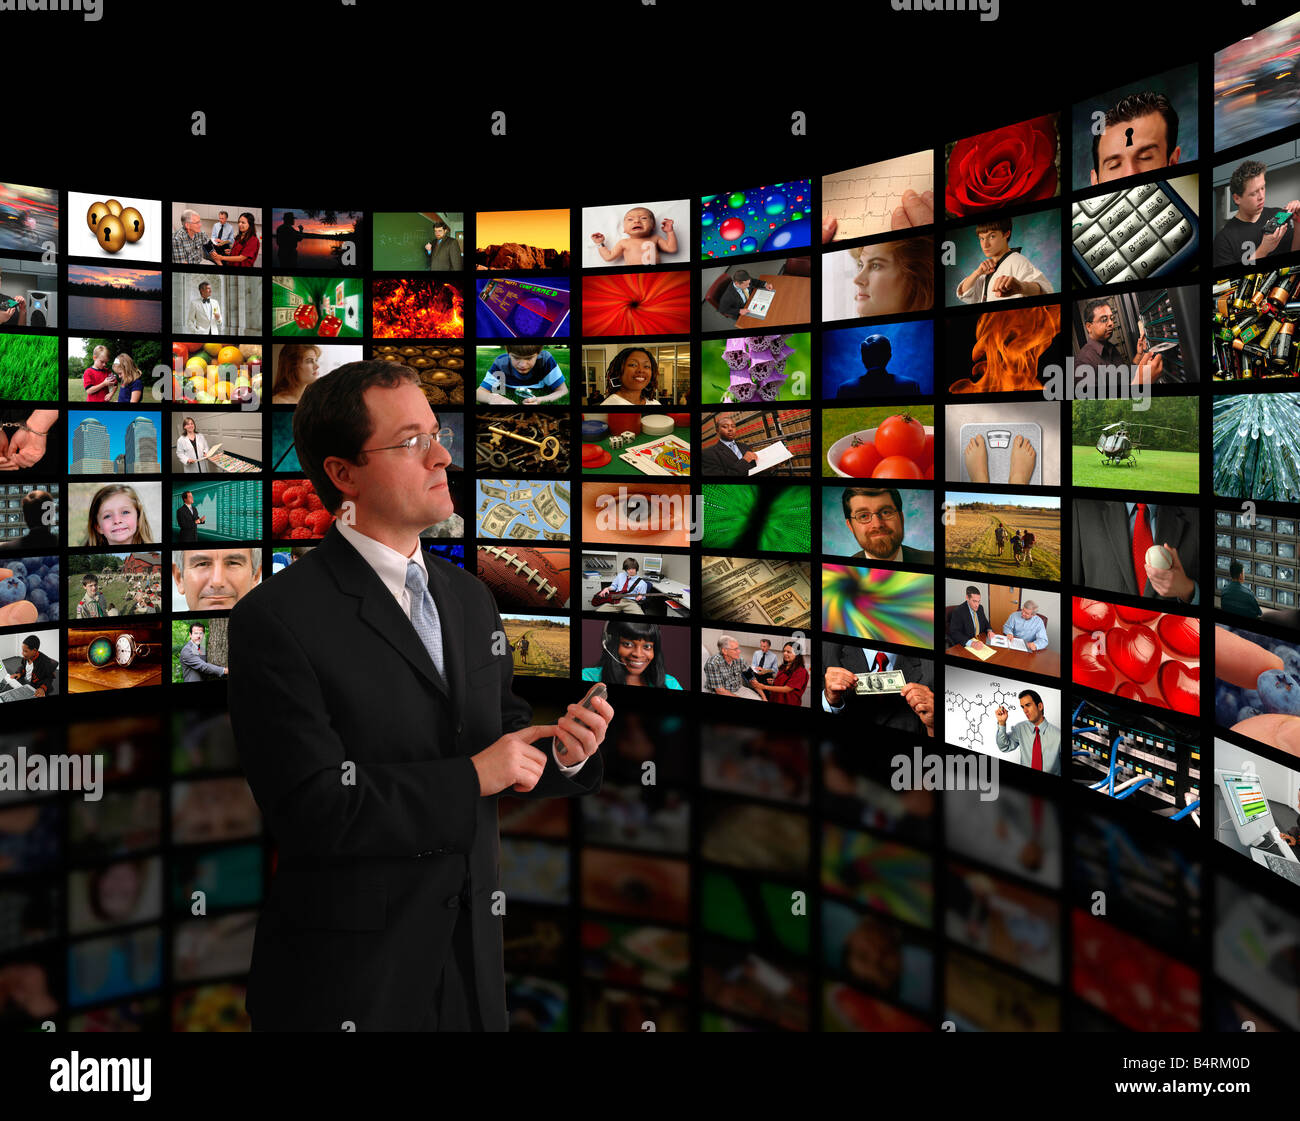 Galerie der globalen Videomedien Kommunikationskanäle oder Fotografie auf eine gekrümmte Wand Stockfoto